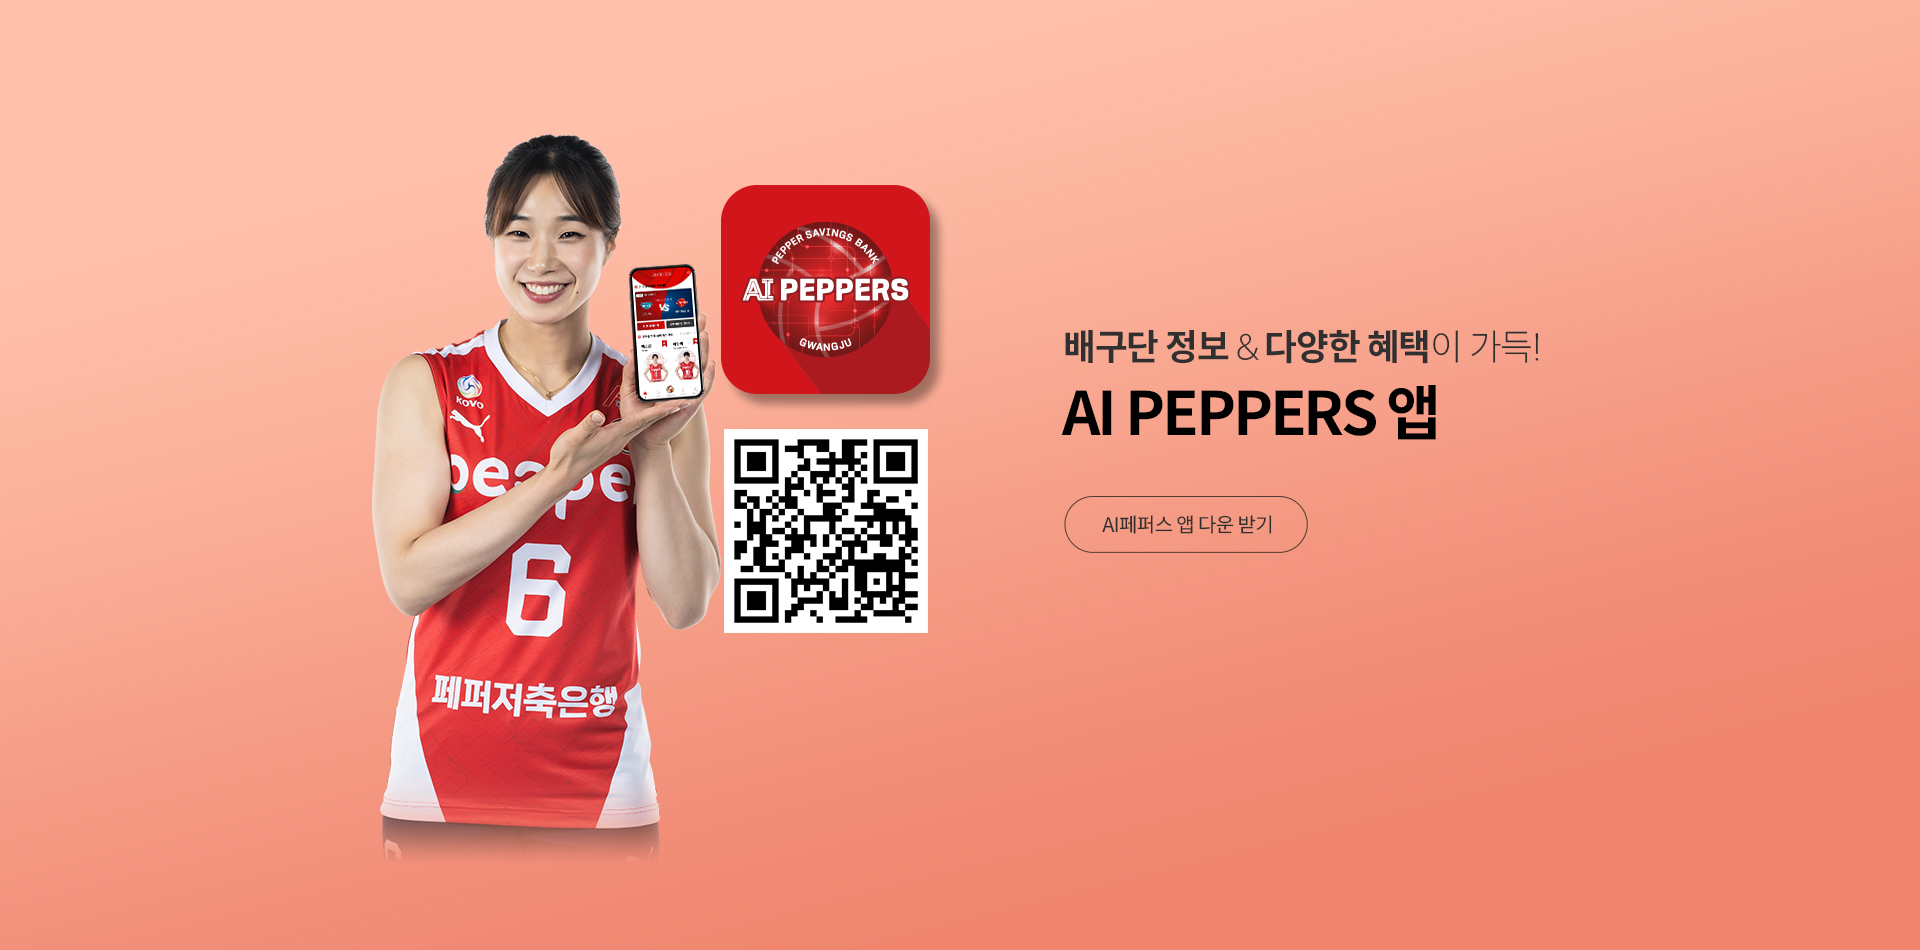 AI peppers App 안내 PC